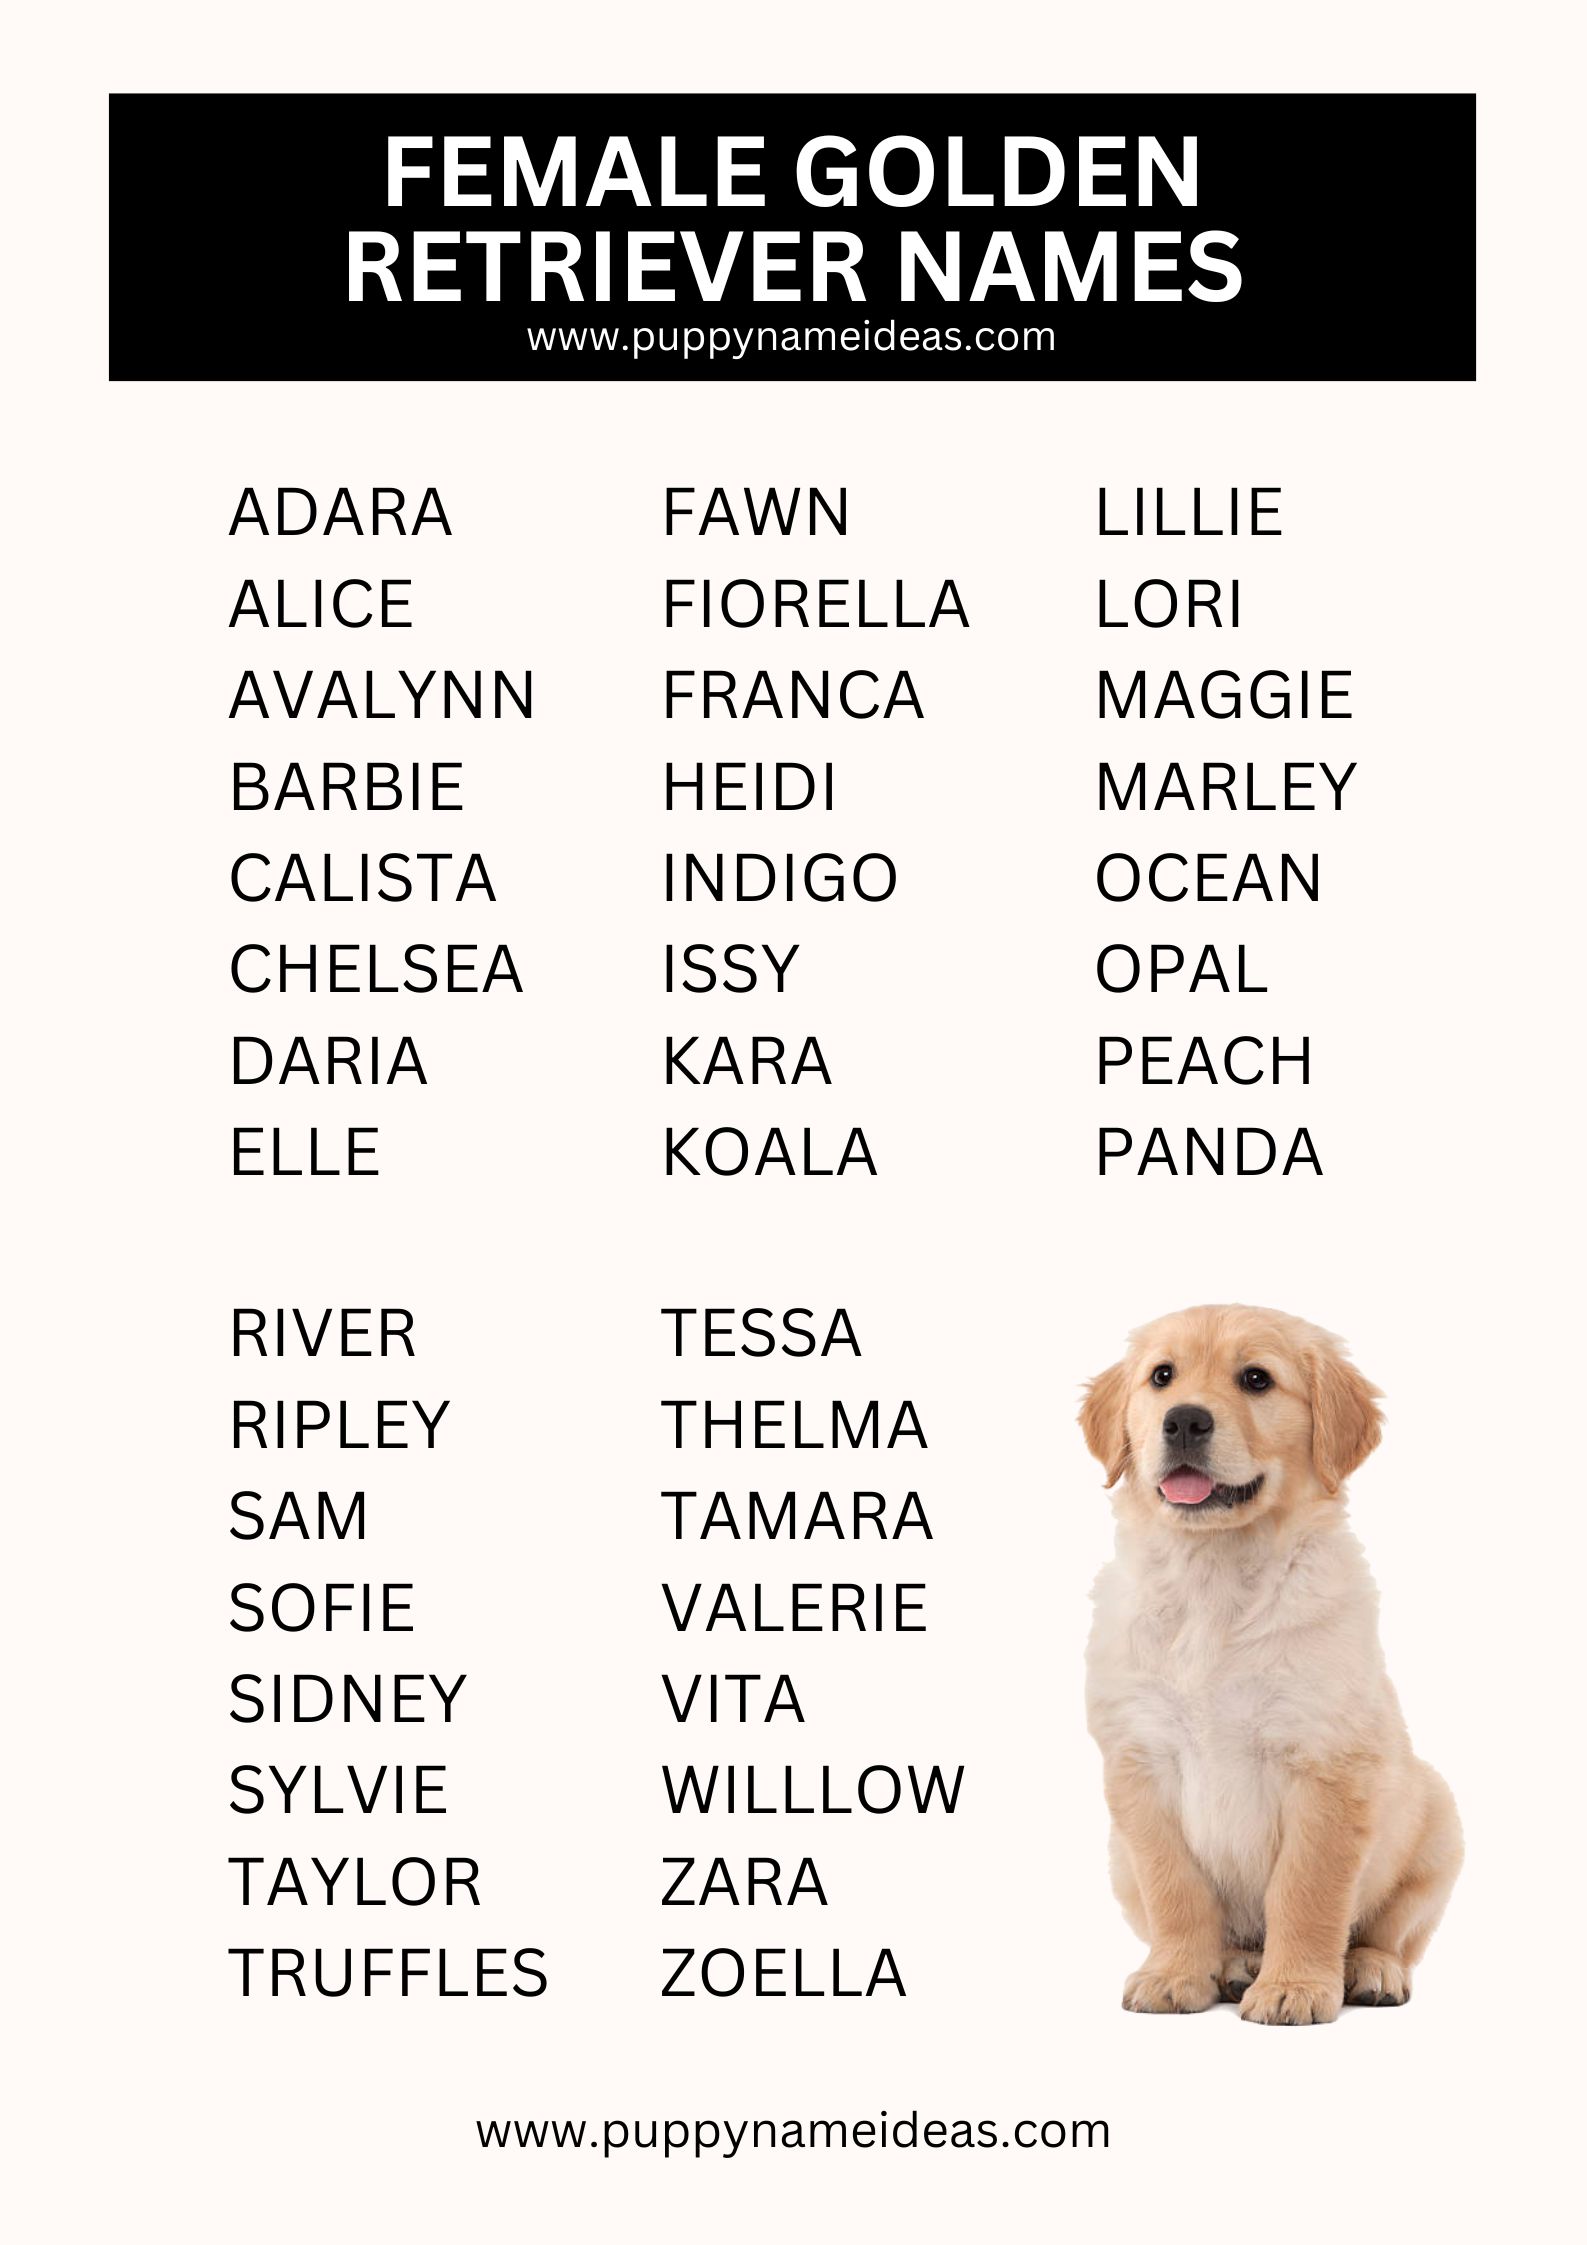 List Of Female Golden Retriever Names